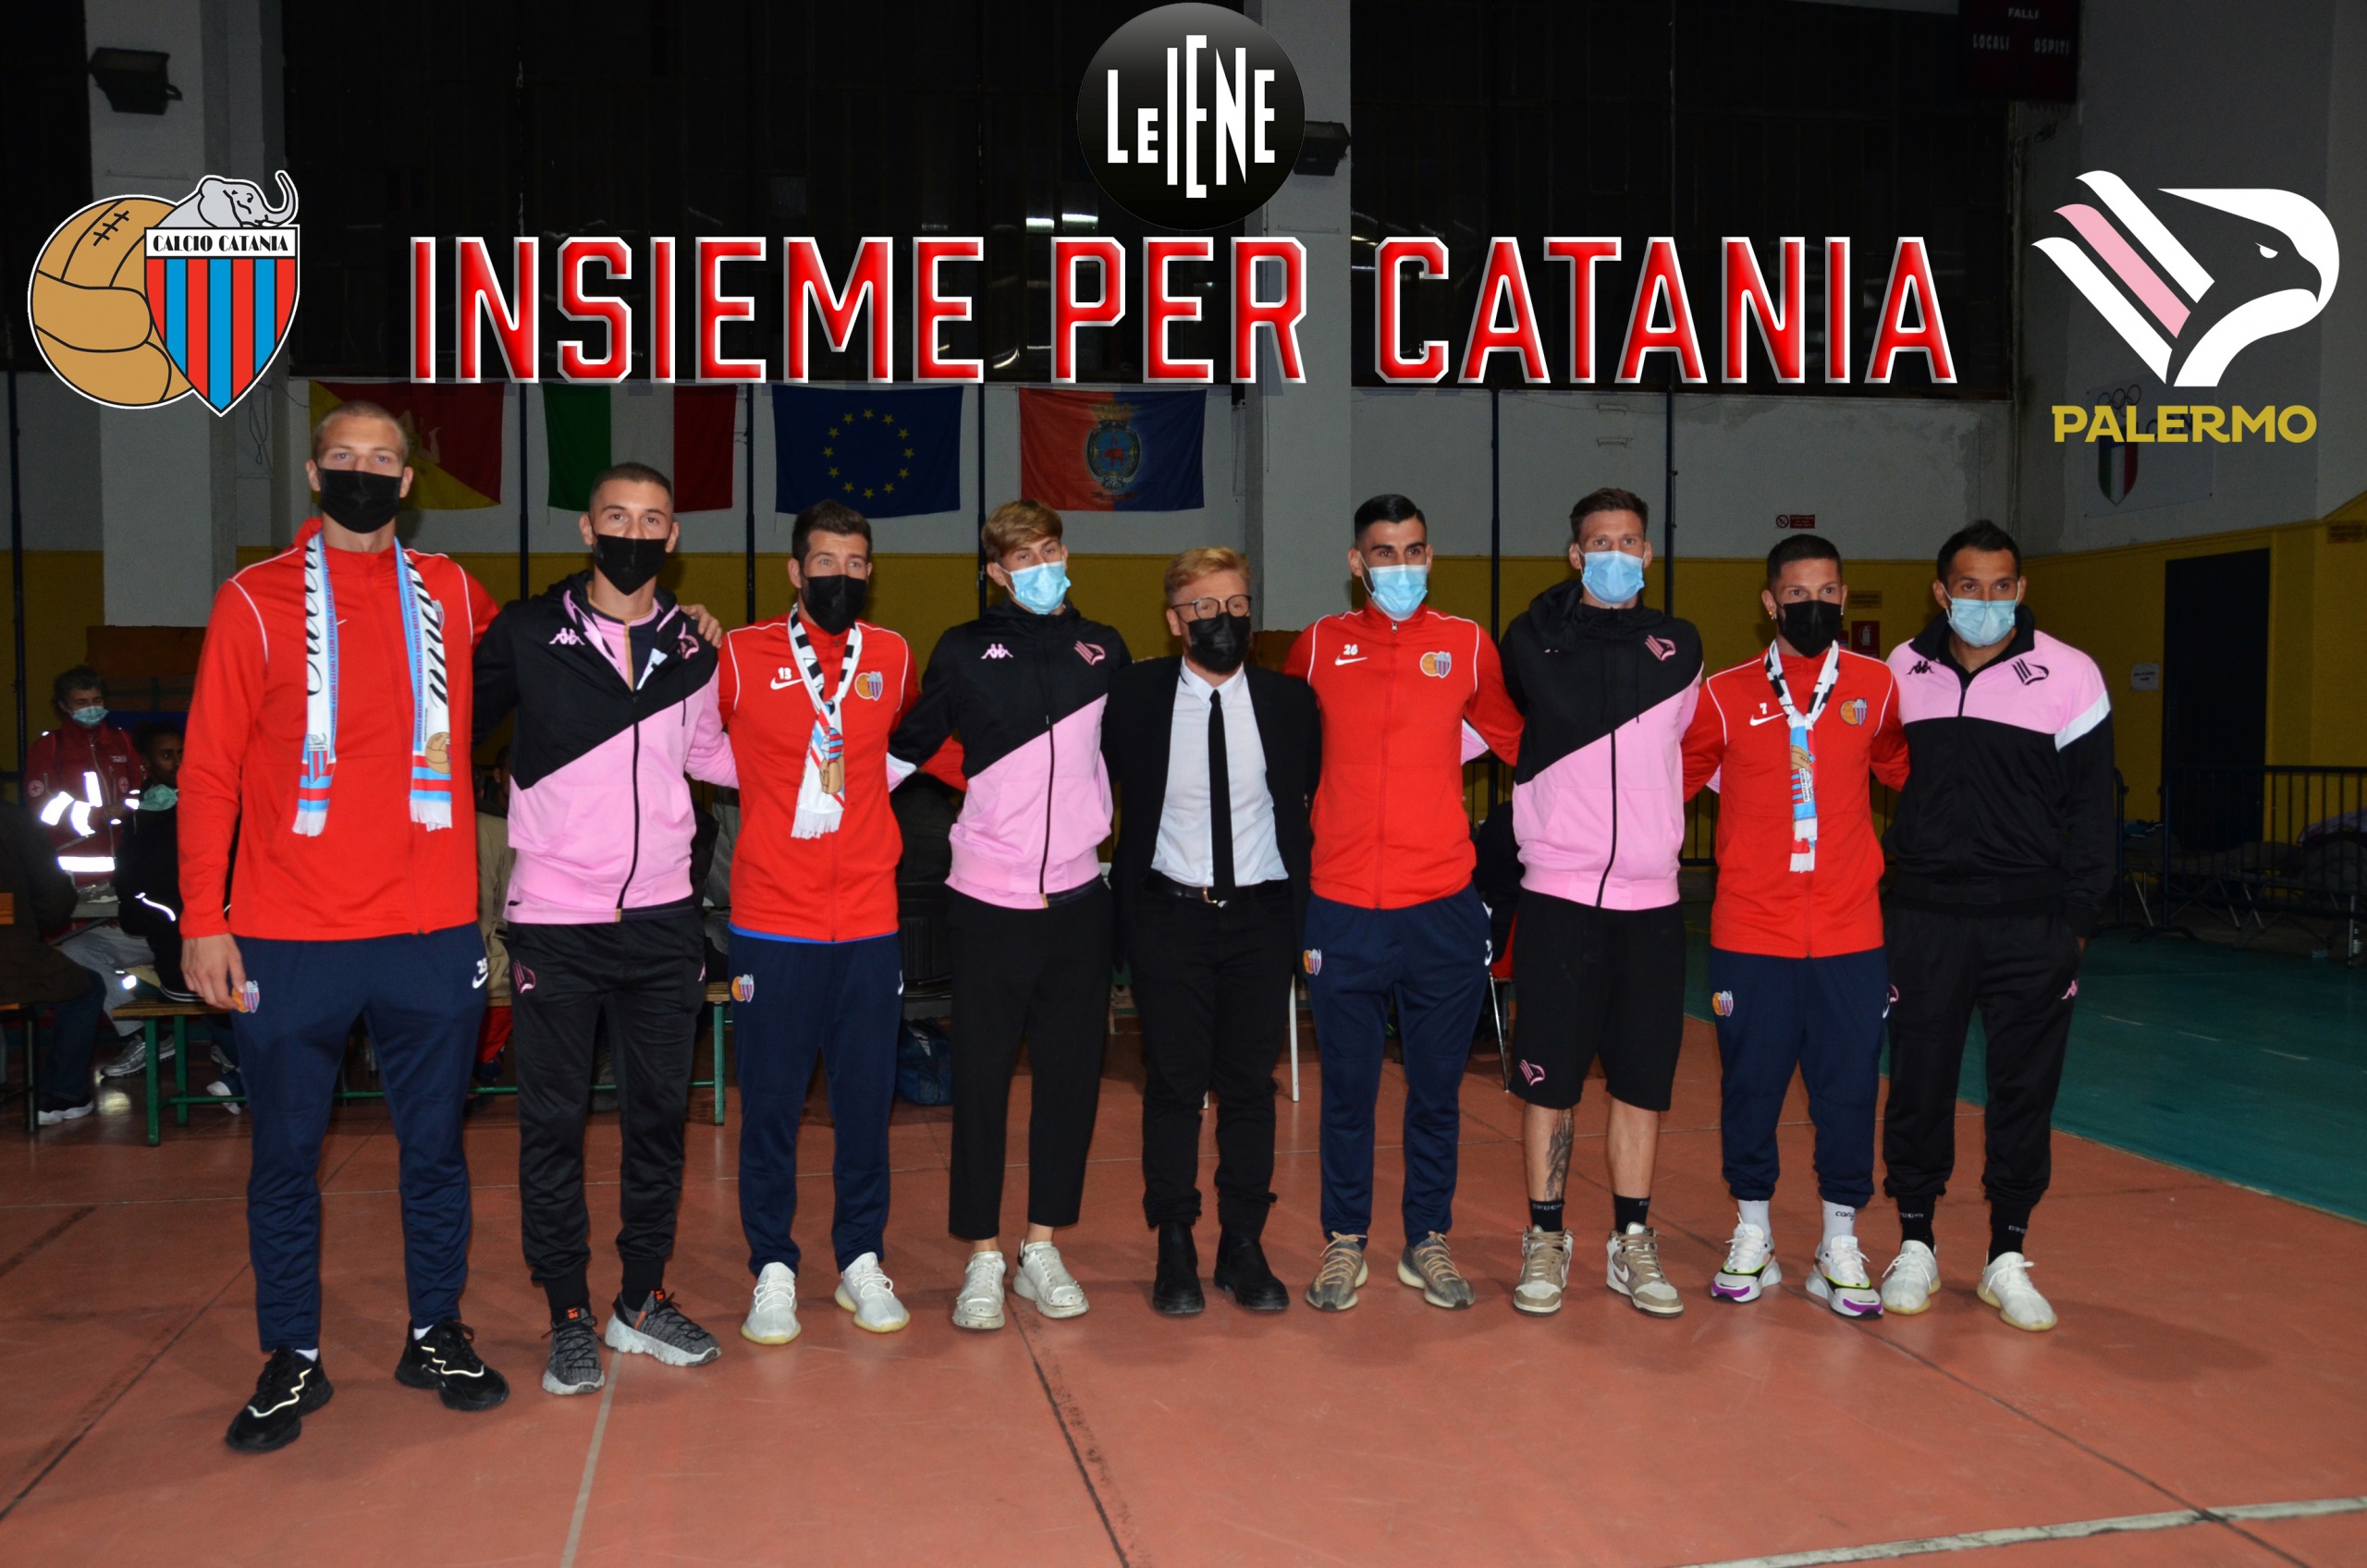 Calcio Catania e Palermo F.C. unite nel segno della Solidarietà – stasera alle Iene